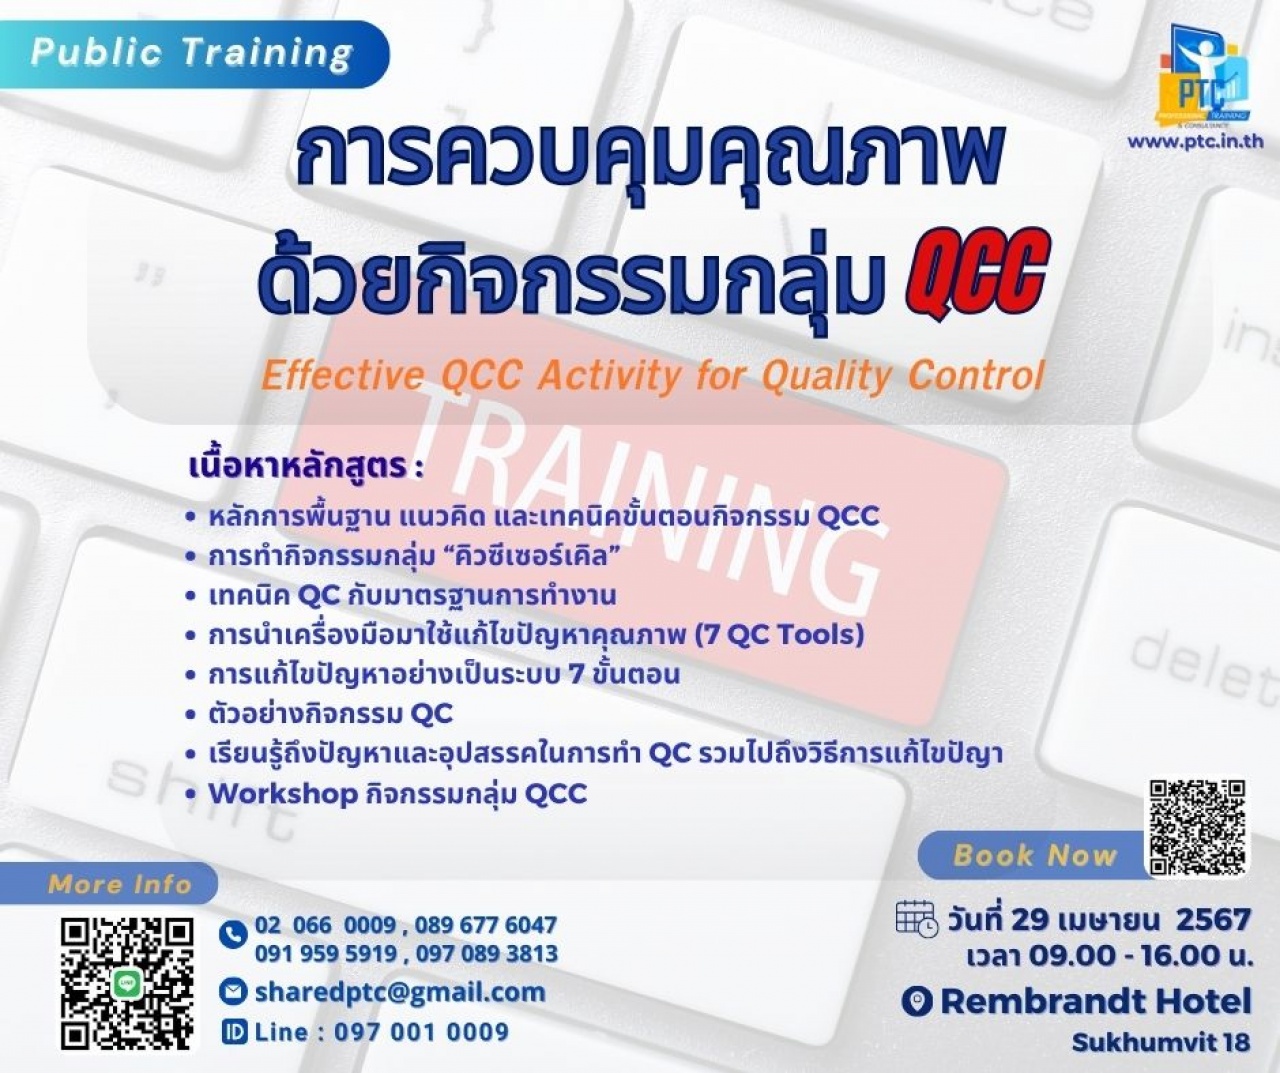 การควบคุมคุณภาพด้วยกิจกรรมกลุ่ม QCC